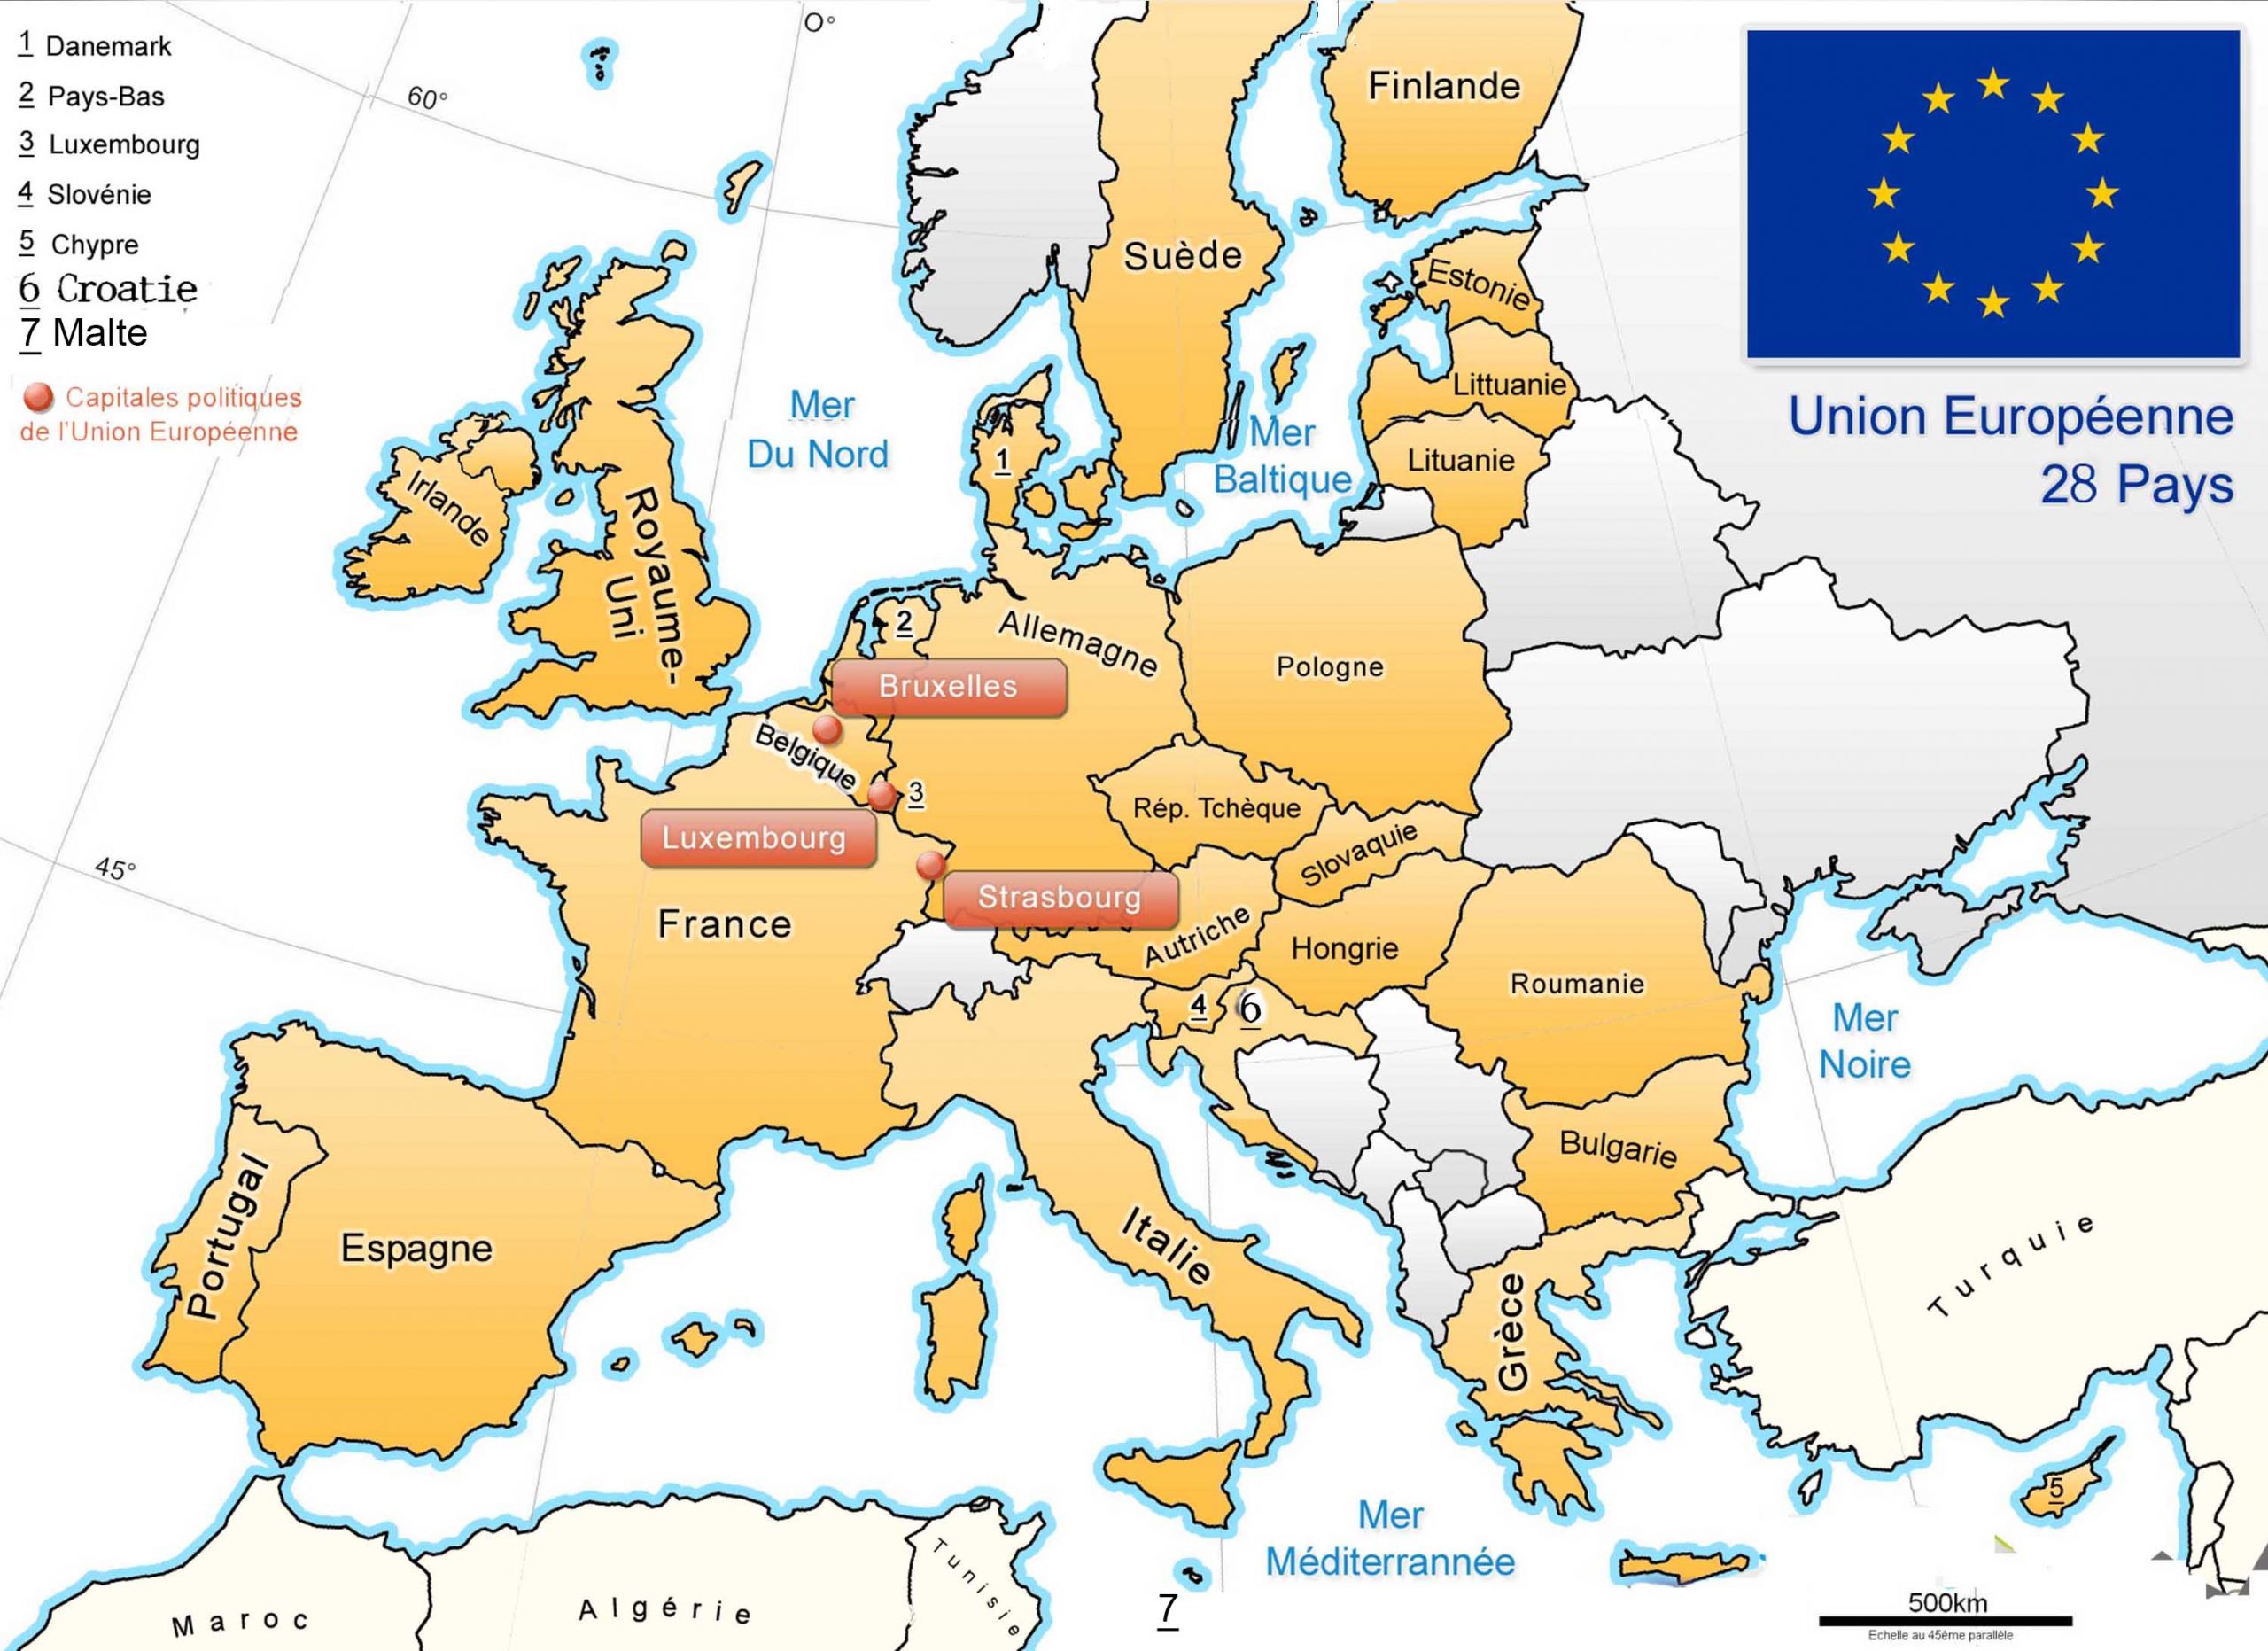 Apprendre À Placer Les Pays De L' Union Européenne - Le Blog tout Les Capitales De L Union Européenne